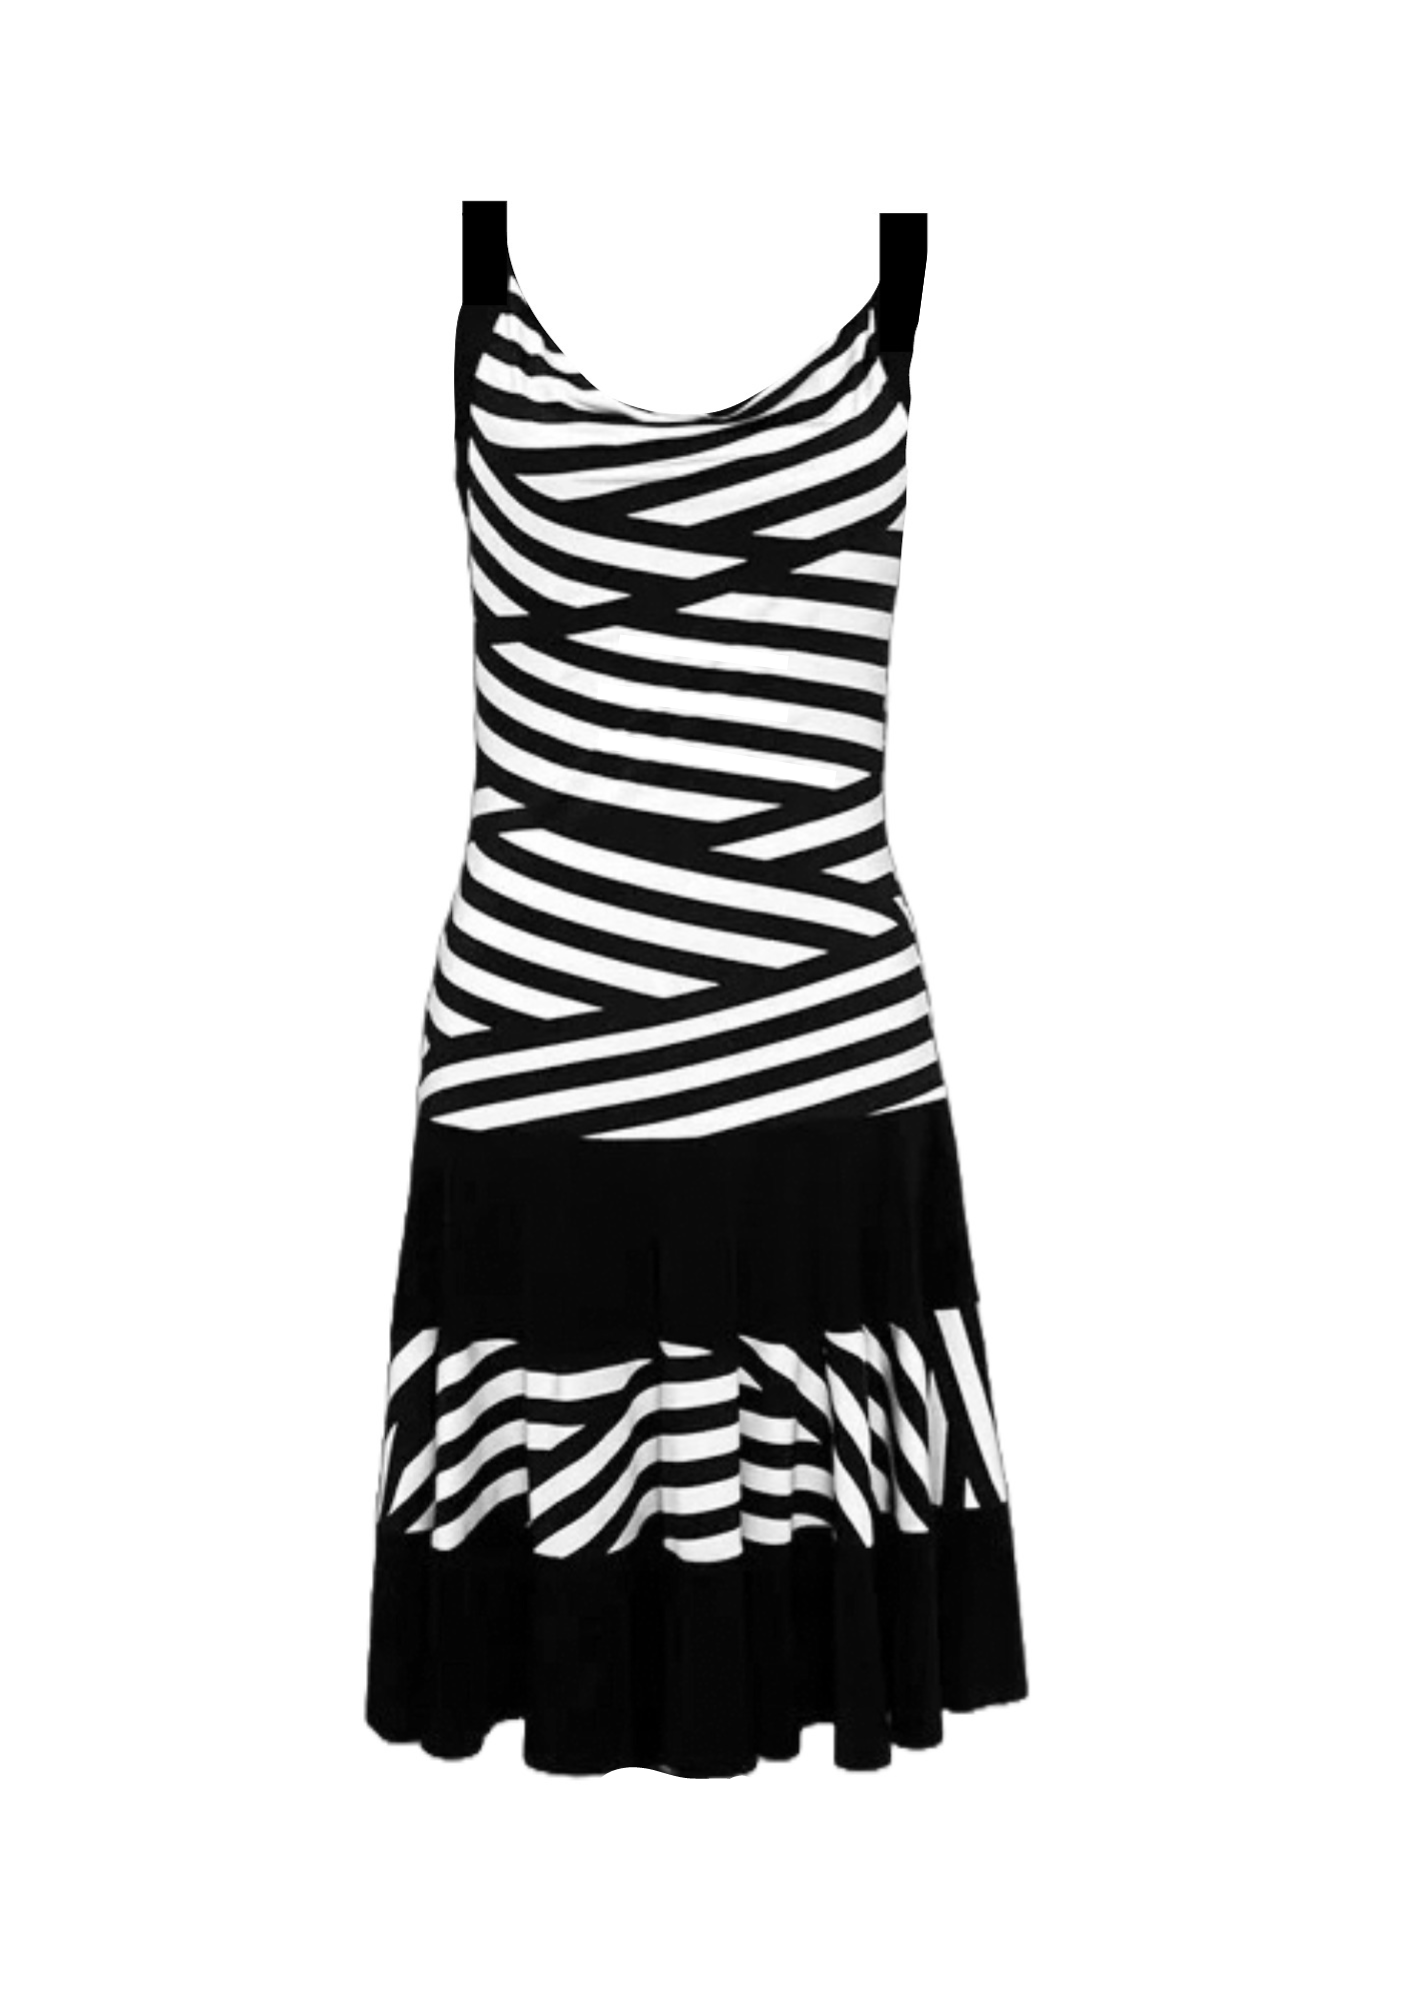 Schwarz -weiß gestreiftes Kleid